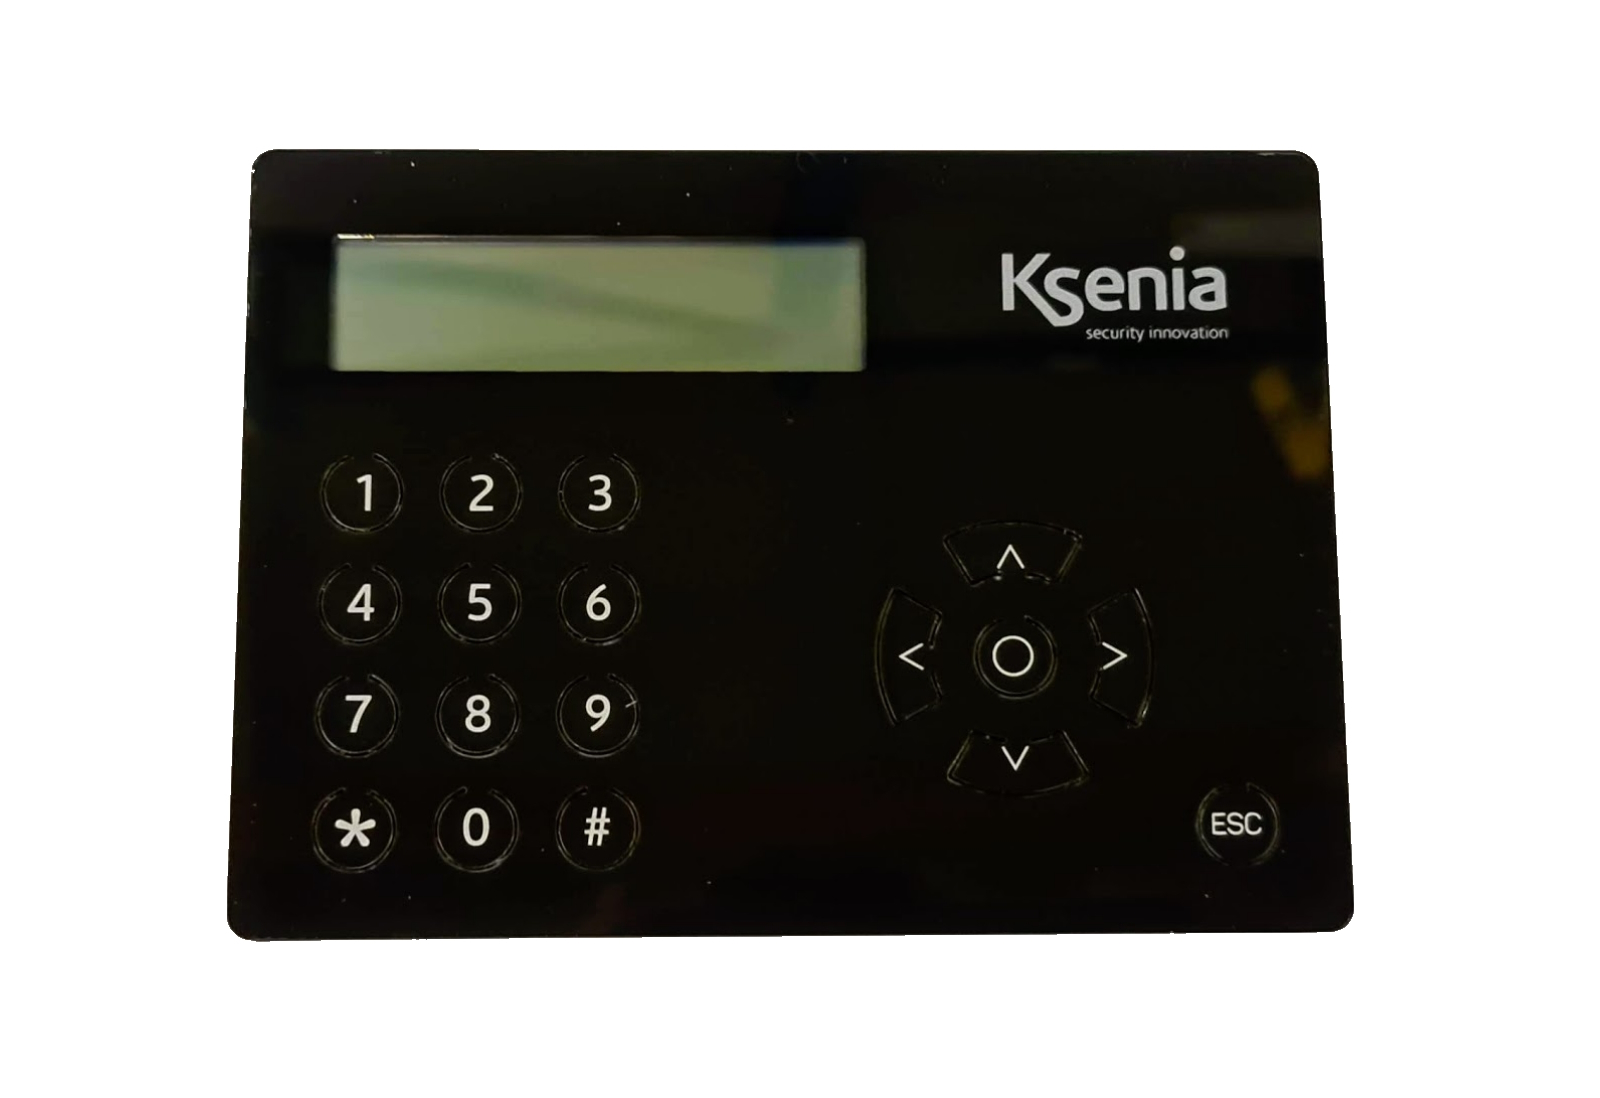 10020027 LCD Keypad voor Ksenia centrales met RFID, zwart